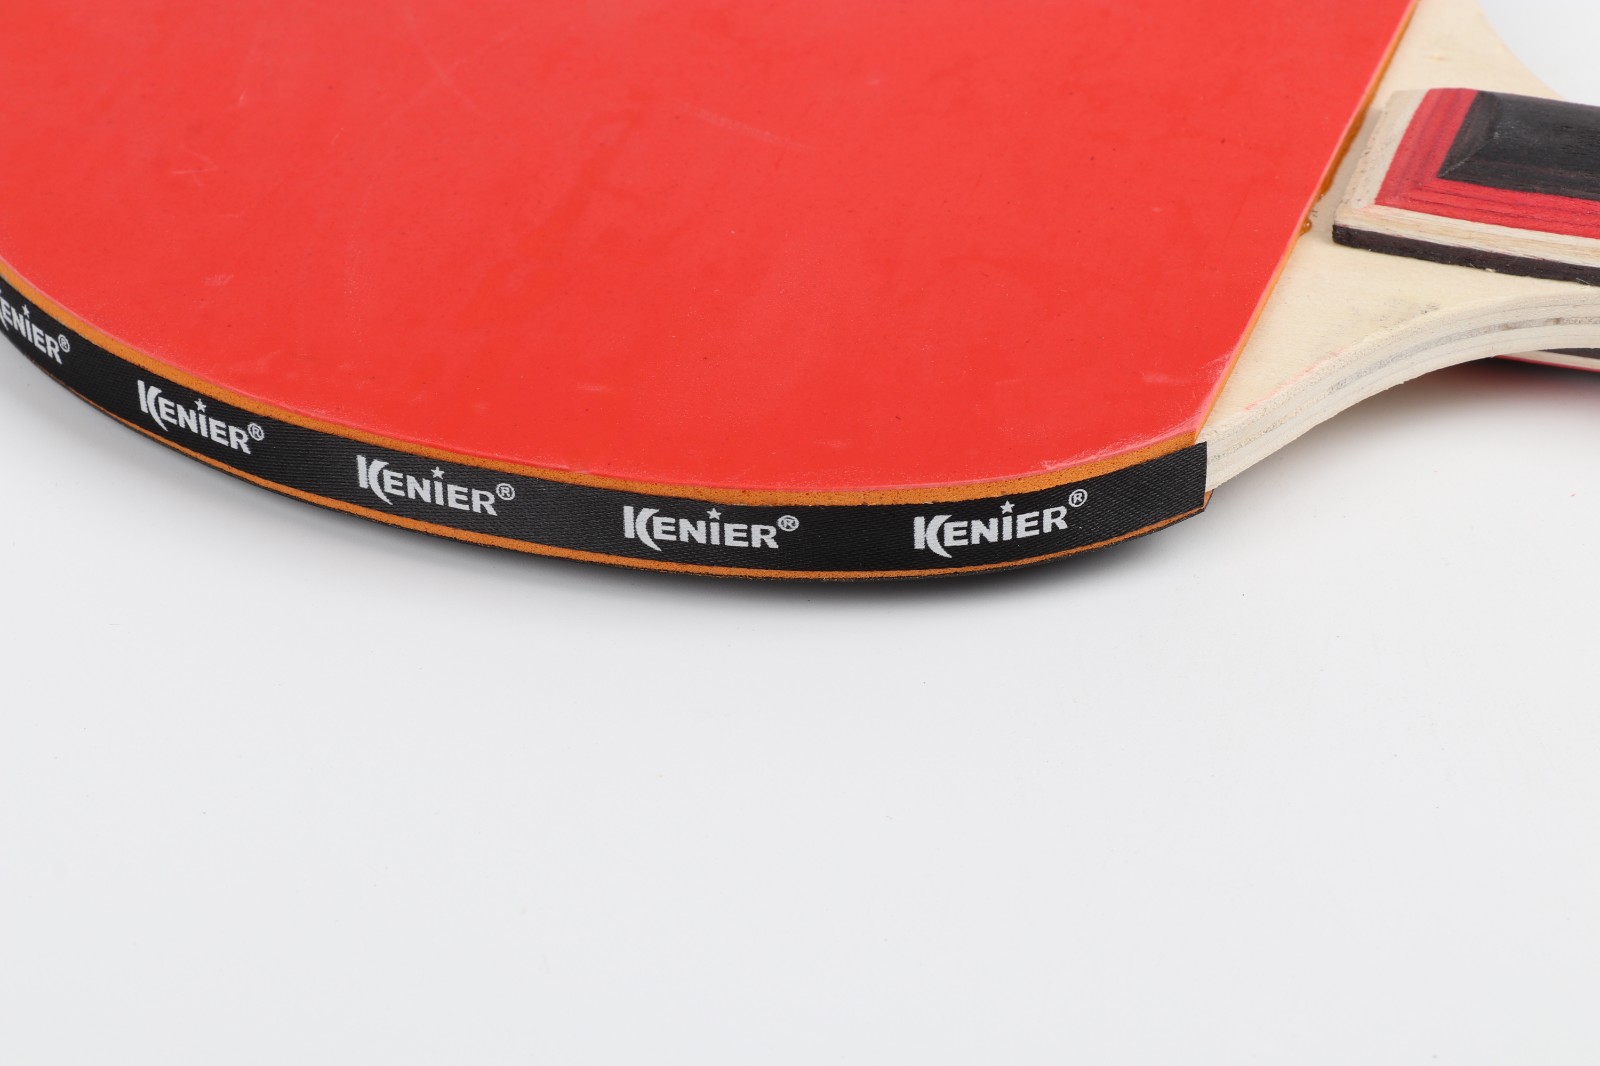 乒乓球拍克尼尔正品保证 厂家直销白底实物图